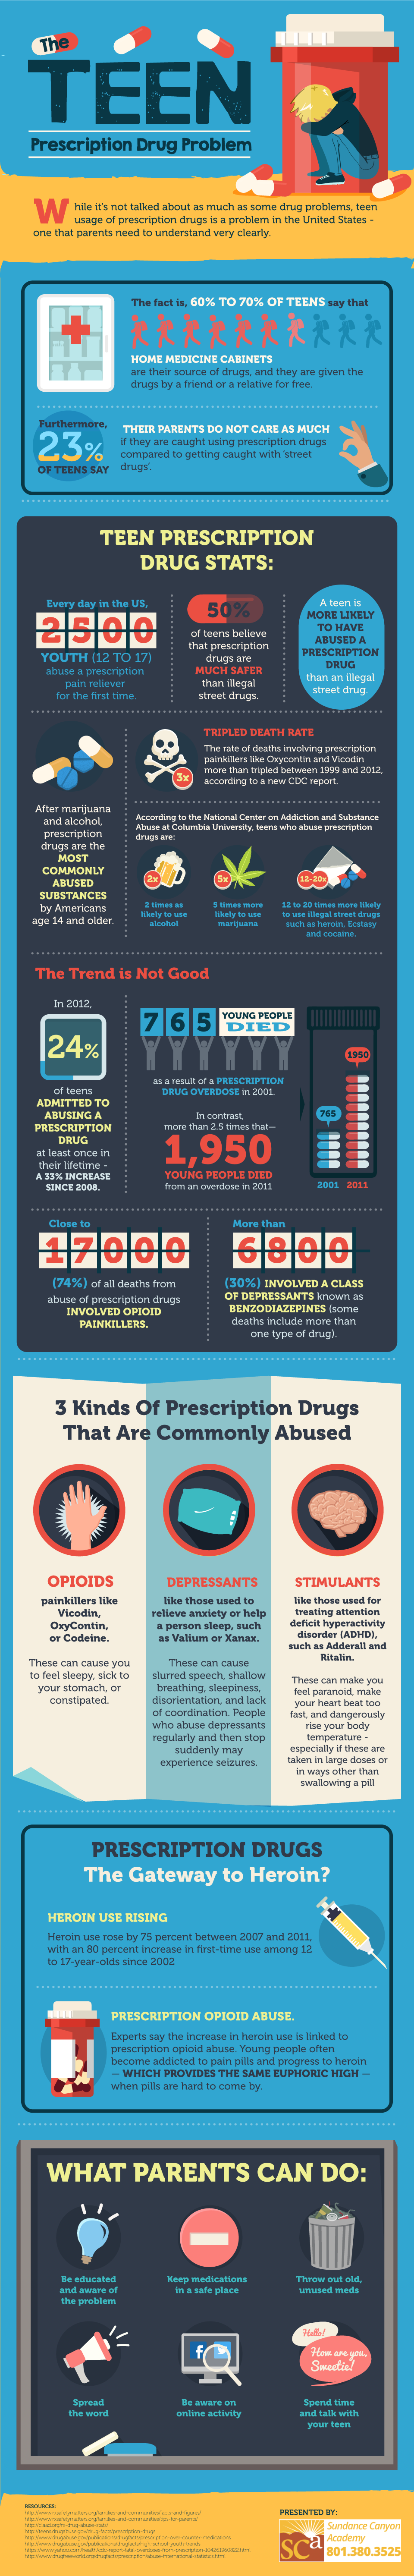 Infographic drugs onder jongeren 